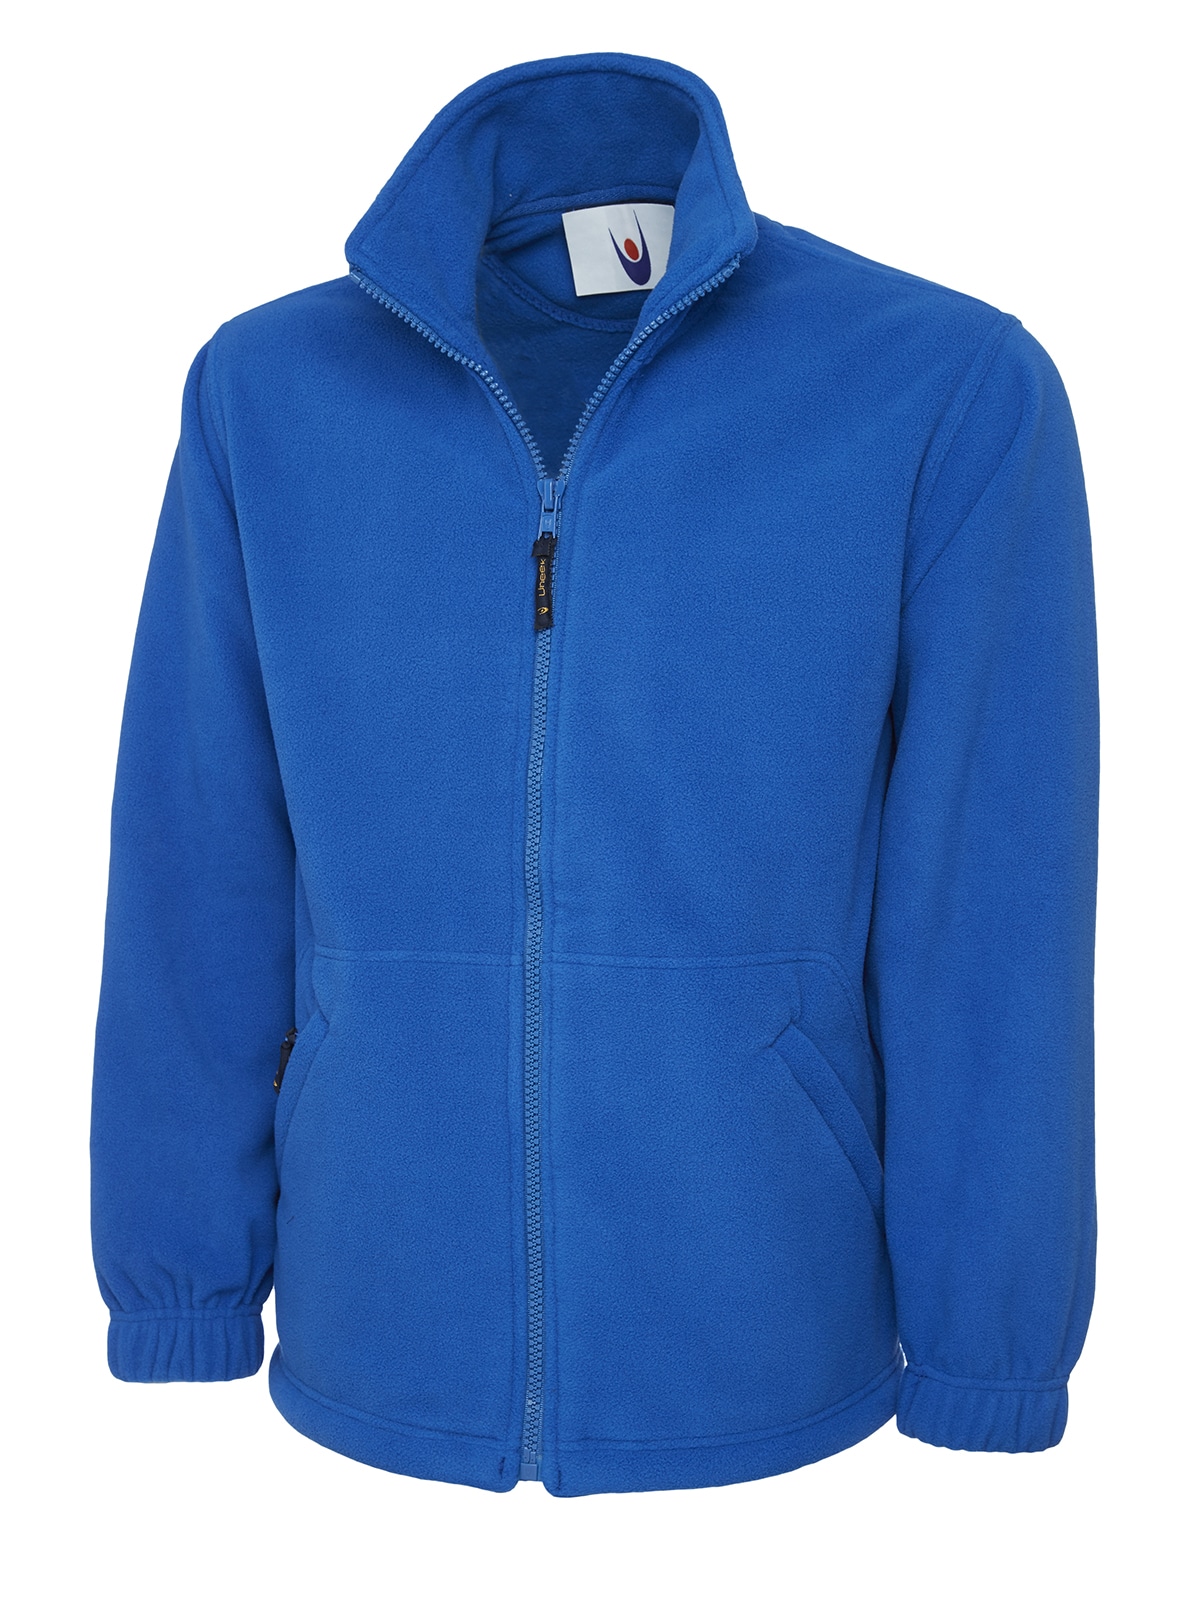 Classic - Jacket Fleece Unisex Uneek Fit Full Zip